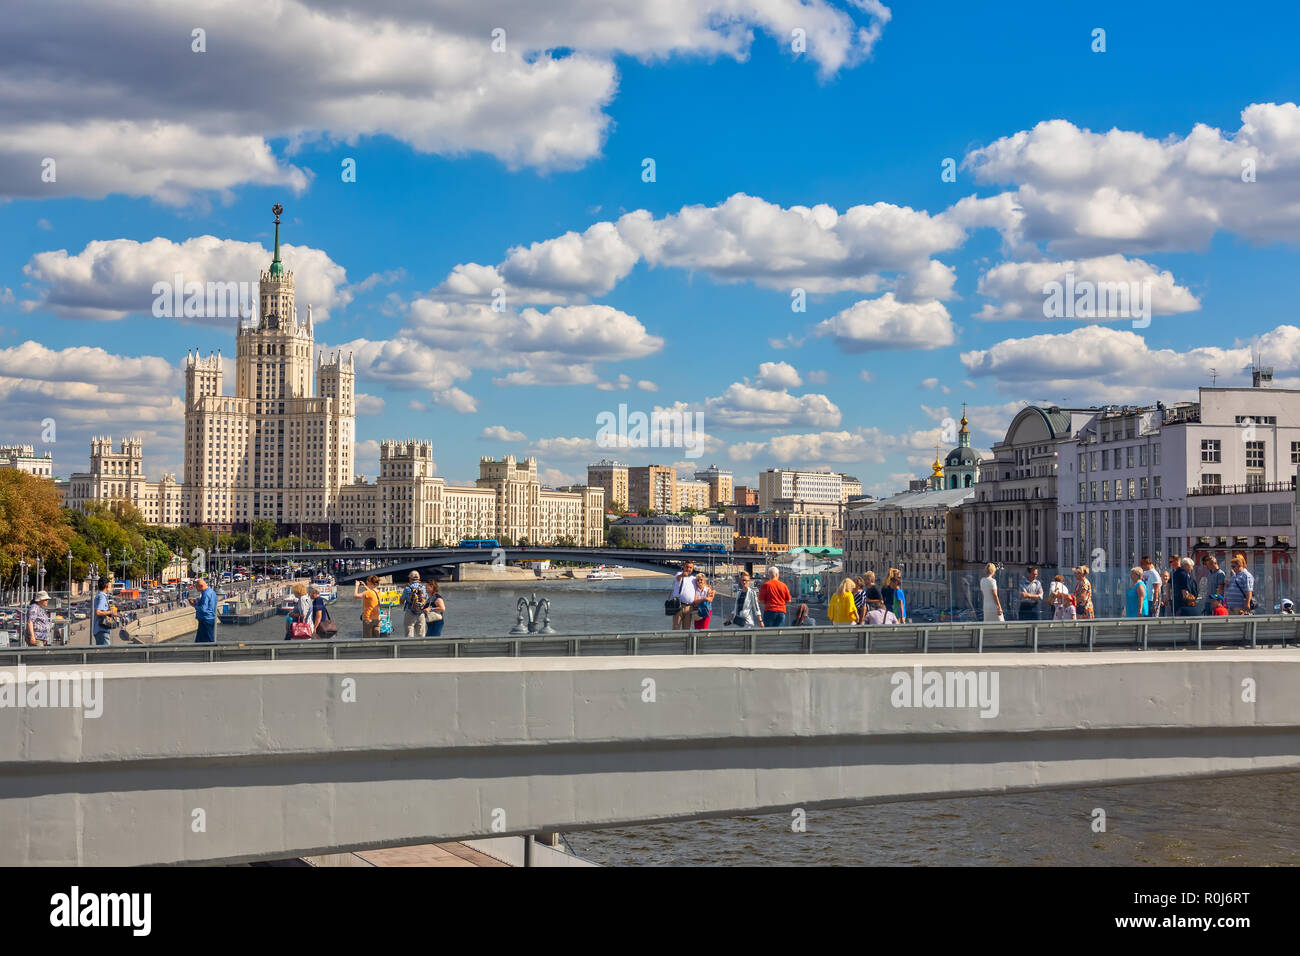 Mosca, Russia - Agosto 13, 2018: Le persone sono a piedi su unico ponte flottante in una nuova e moderna Zaryadye park. Kotelnicheskaya Embankment edificio come Foto Stock